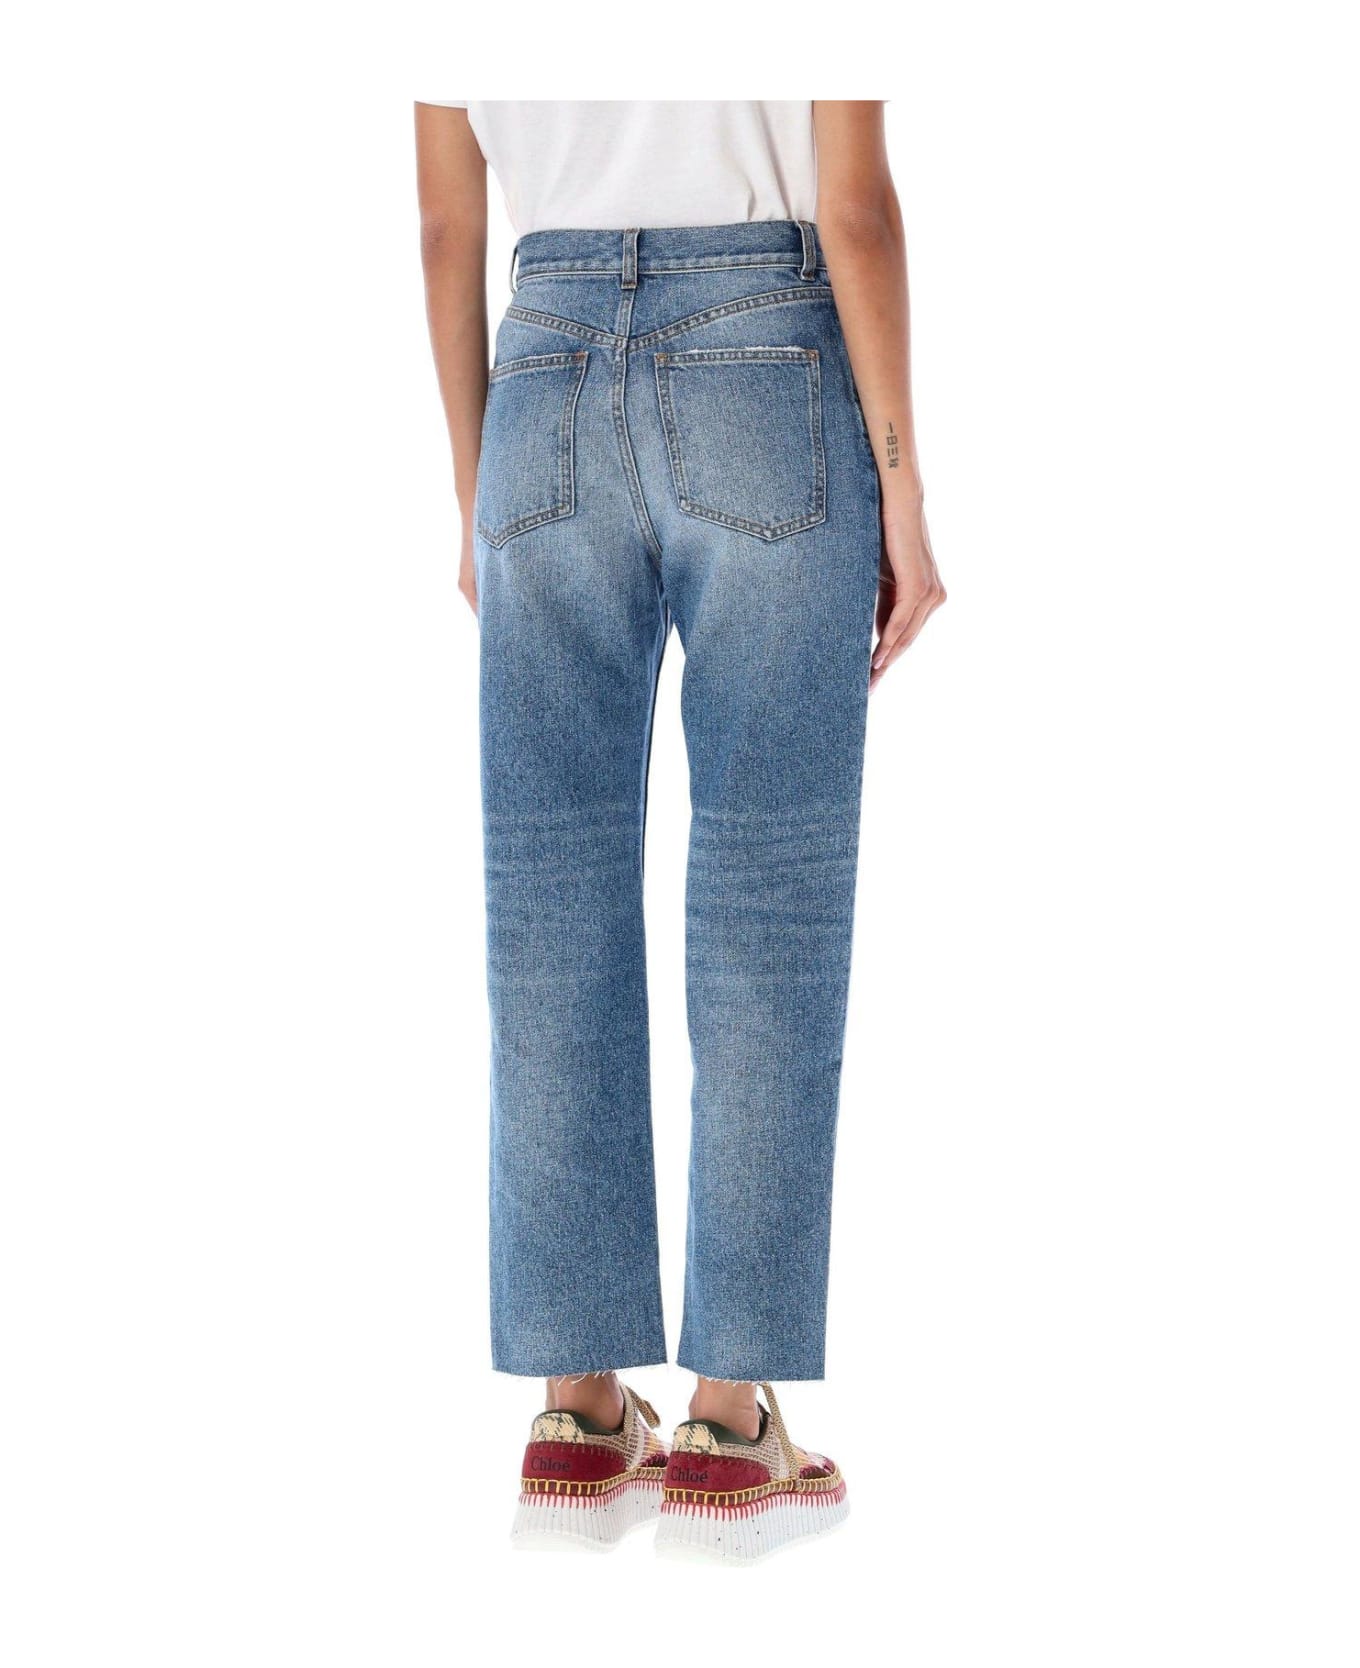 Chloé Raw Cut Denim Jeans - FOGGY BLUE